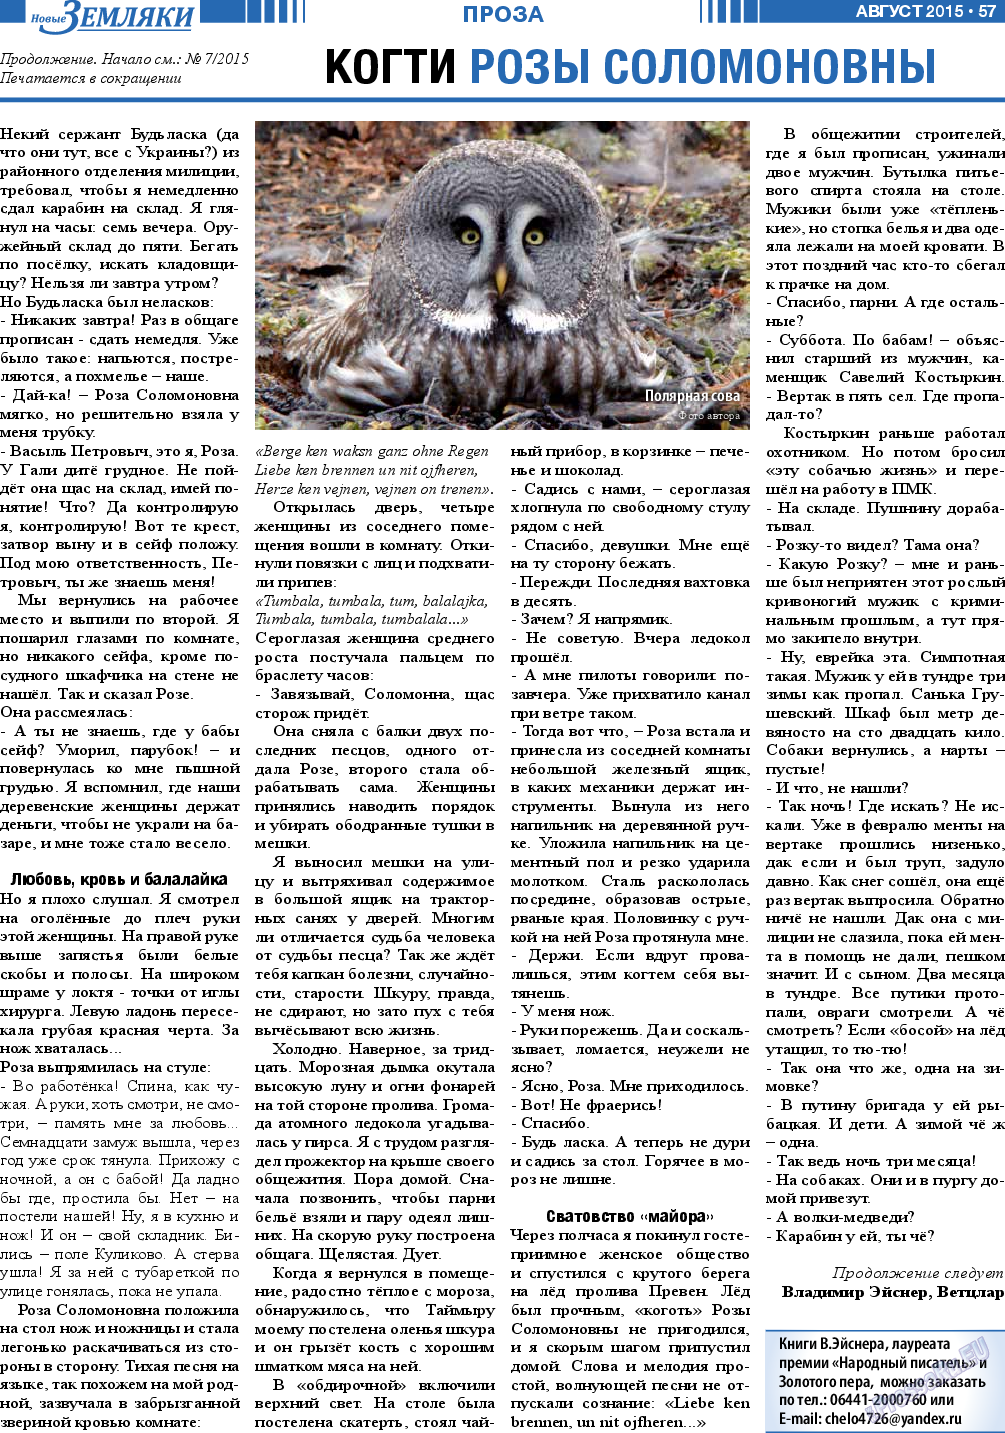 Новые Земляки, газета. 2015 №8 стр.57